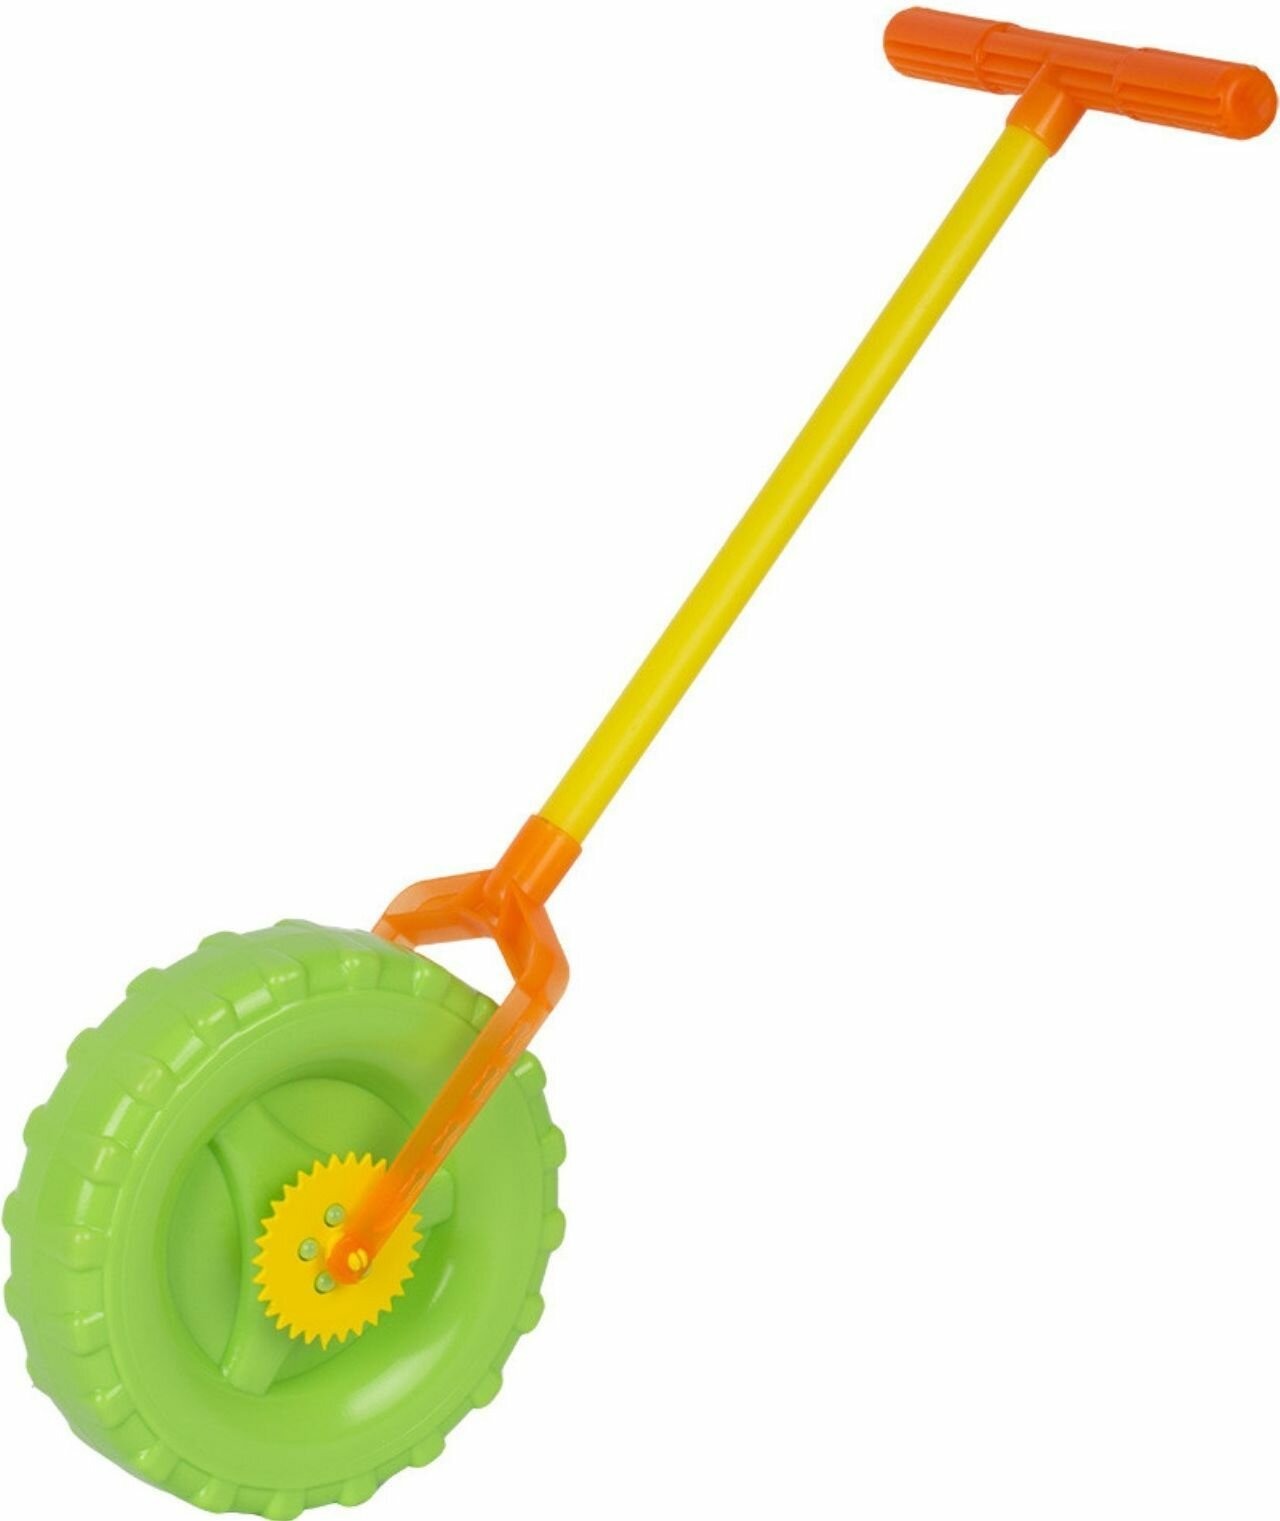 Детская игрушка "Колесо" для малышей с ручкой, каталка на палочке для дома и улицы